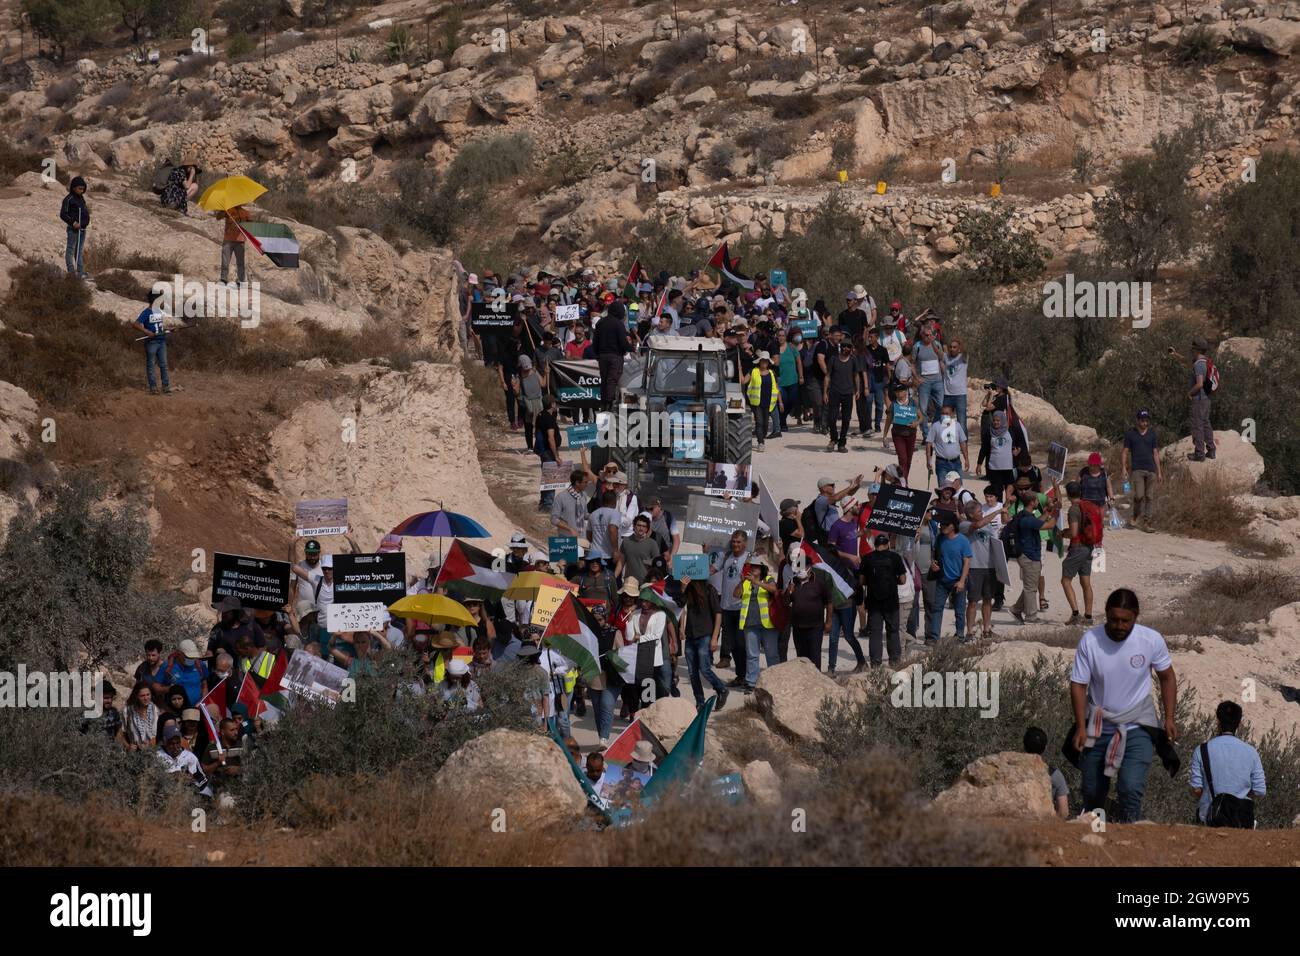 Les manifestants palestiniens et les militants israéliens pour la paix défilent ensemble lors d'une manifestation contre la coupure de l'approvisionnement en eau des villages palestiniens, Et la solidarité avec le camp de bergers palestiniens Khirbat al-Mufaqara qui a été attaqué plus tôt cette semaine par des colons juifs dans les collines de South Hebron le 02 octobre 2021 en Cisjordanie, Israël. Au cours des deux dernières décennies, les autorités israéliennes ont tenté d'expulser les Palestiniens vivant dans la région des collines de South Hebron, sur le terrain de vivre illégalement dans les zones de feu militaires israéliennes. Banque D'Images